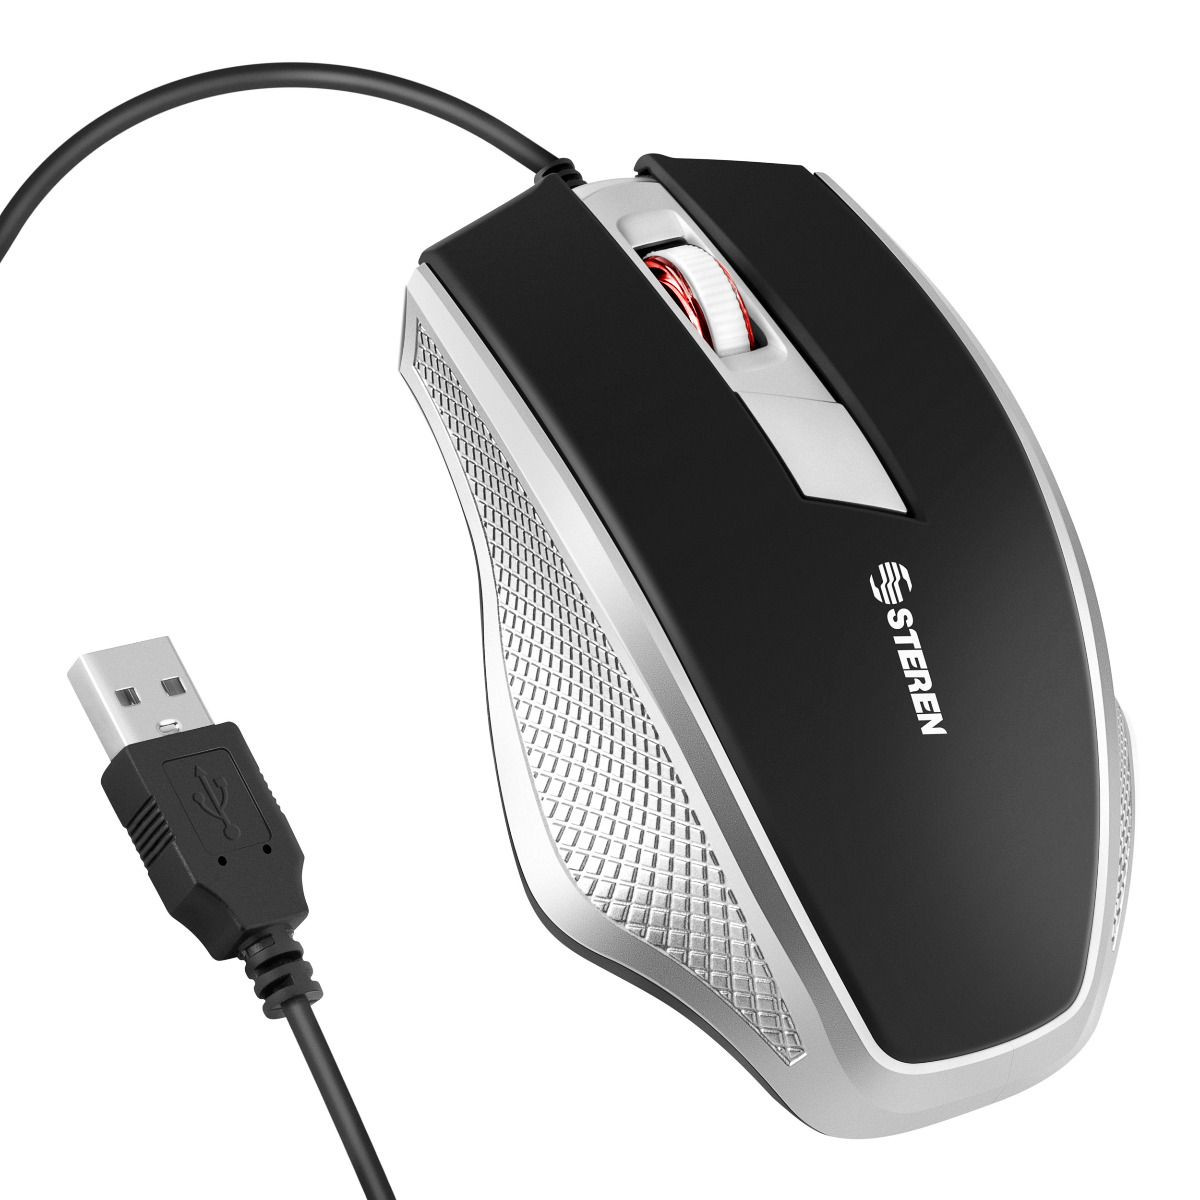 Ratón con cable, mouse óptico silencioso con cable USB, puerto USB de 1200  DPI, diseño ergonómico, Plug and Play, mouse de computadora para